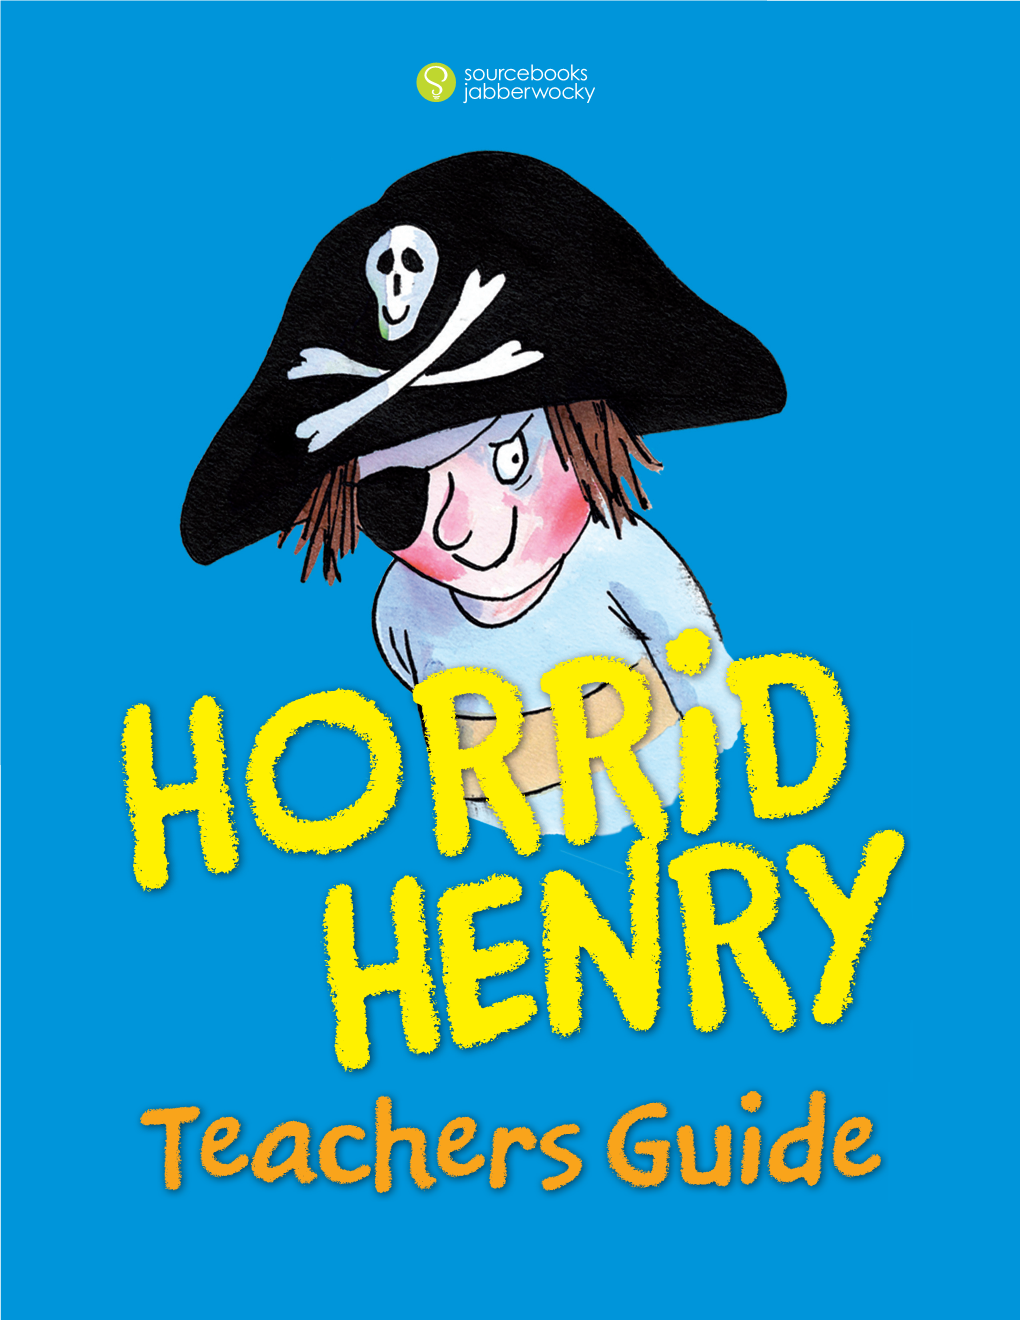 Download the Horrid Henry Teacher's Guide